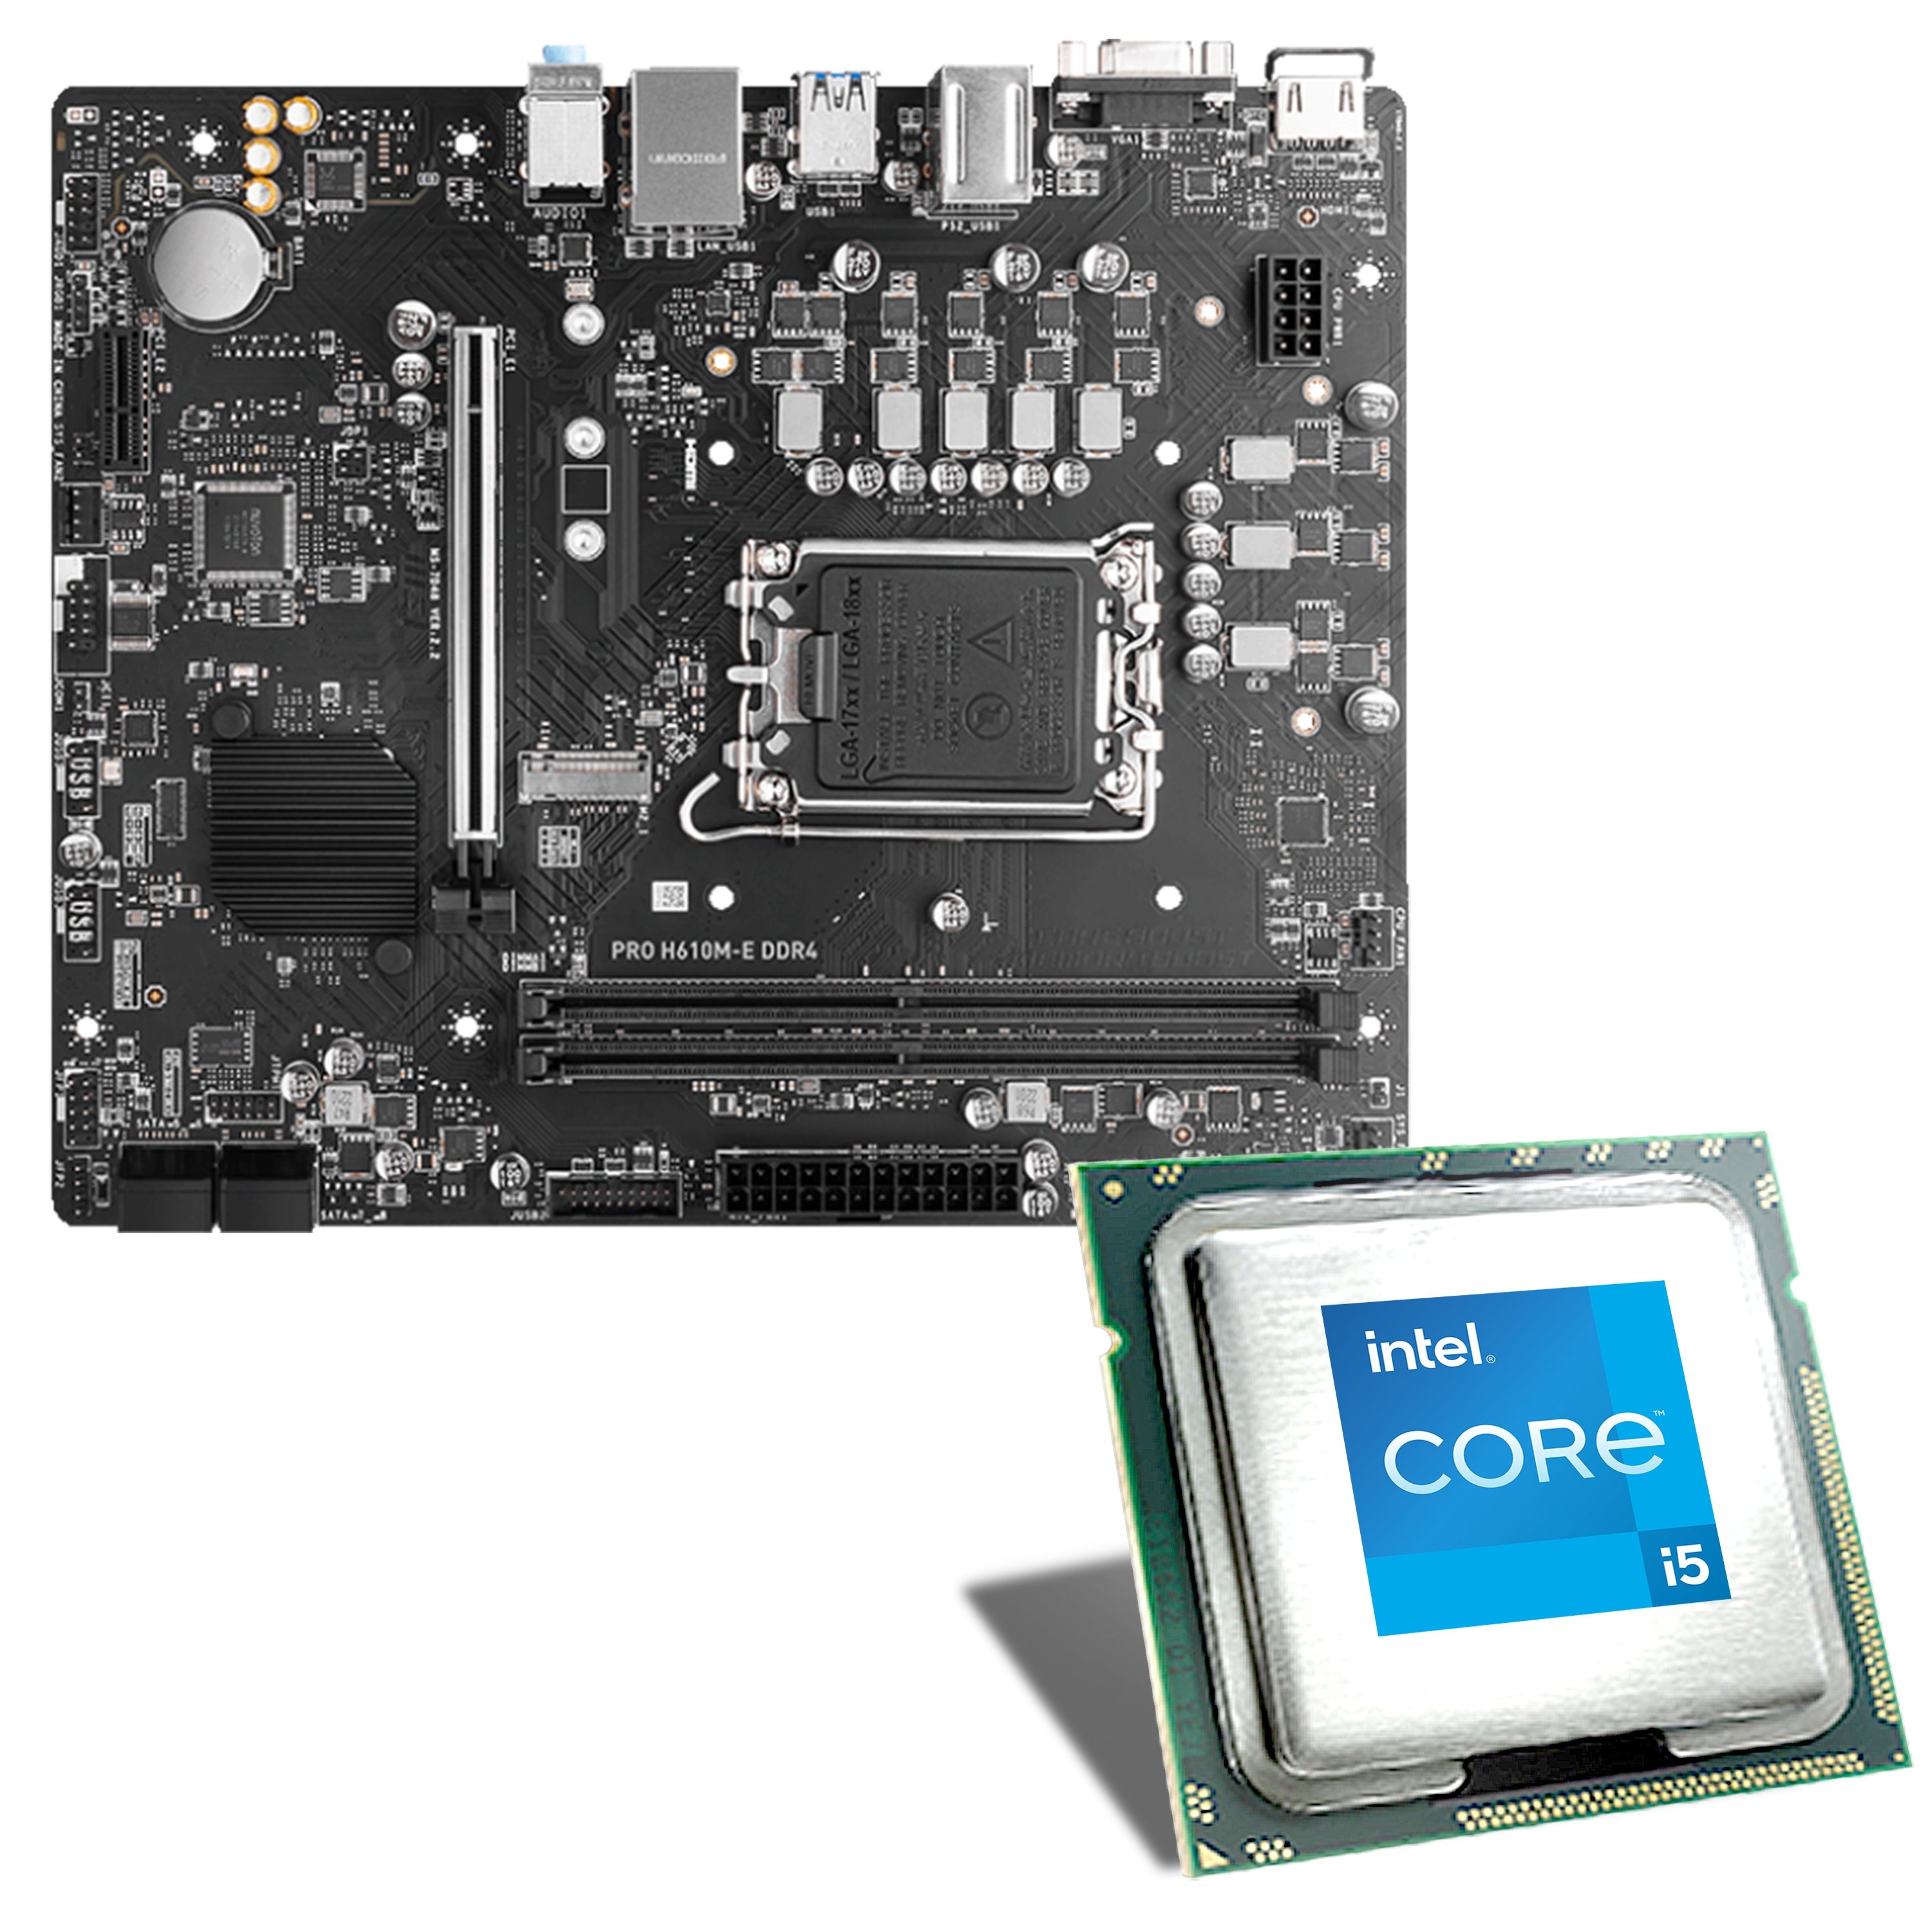 Gaming PC Build Intel Core i5 13400F RTX 4060 DDR5 LC240